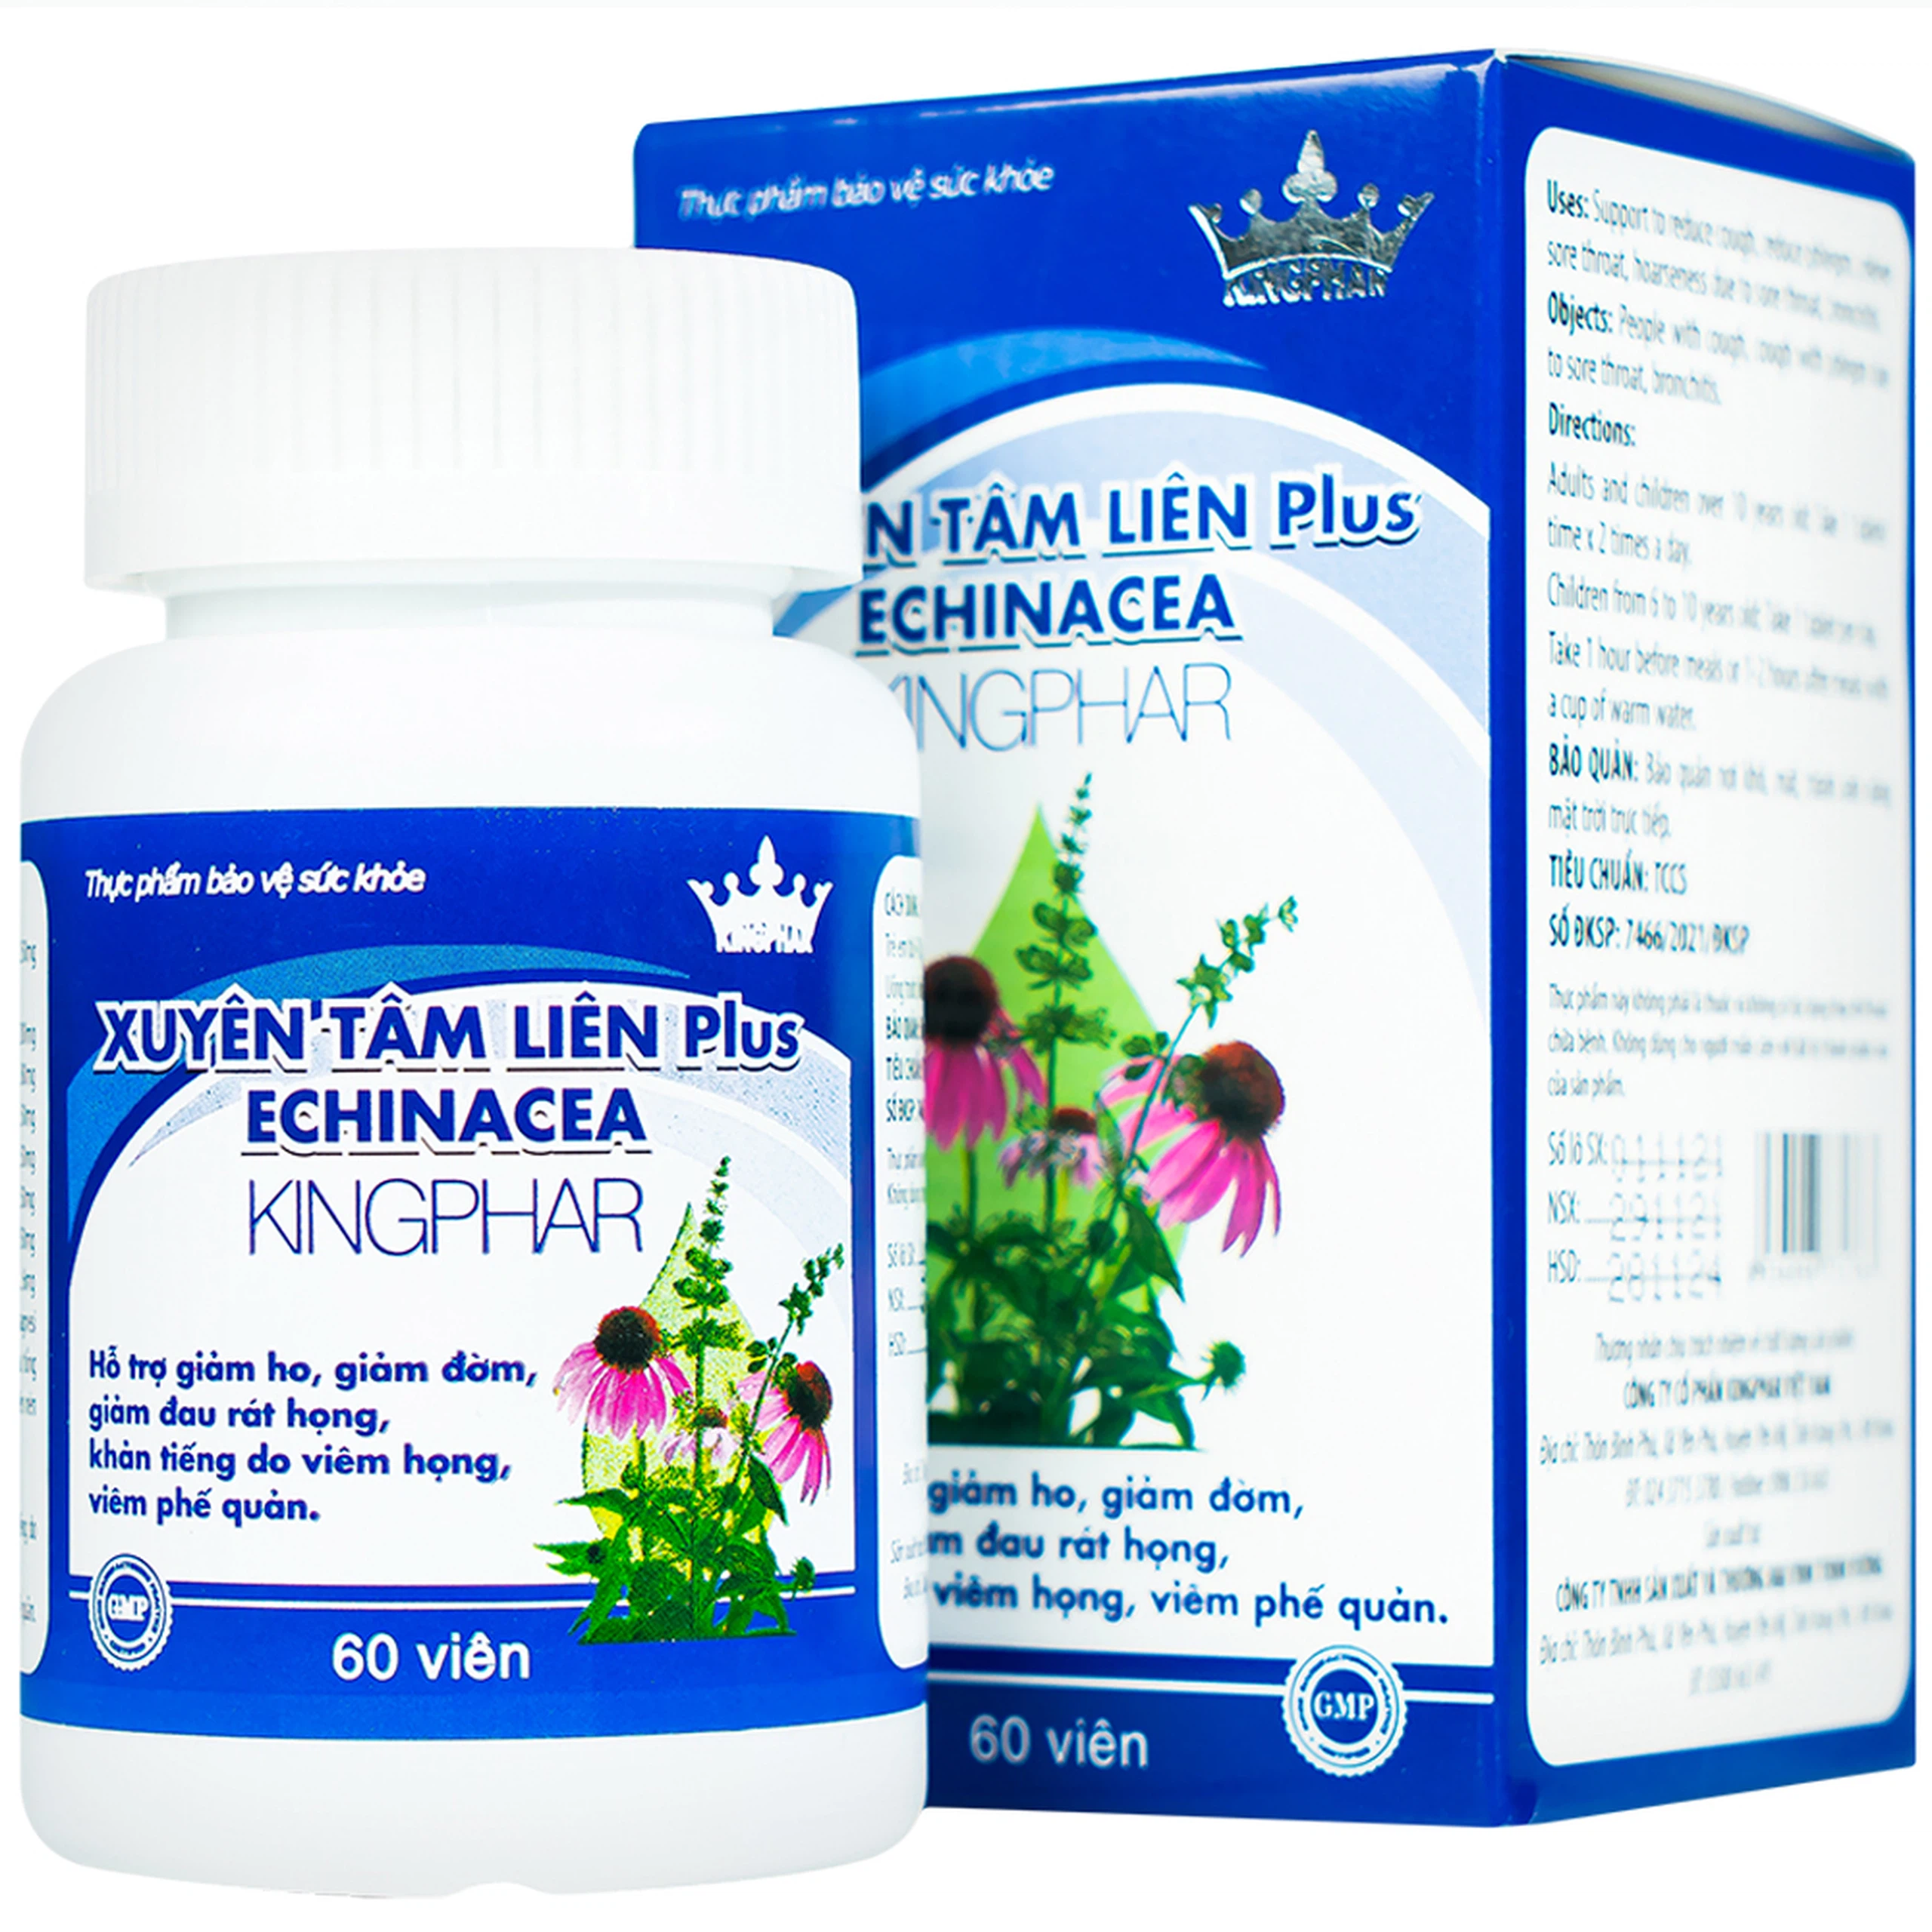 Viên nén Xuyên Tâm Liên Plus Echinacea Kingphar hỗ trợ giảm ho, giảm đờm, giảm đau rát họng (60 viên)